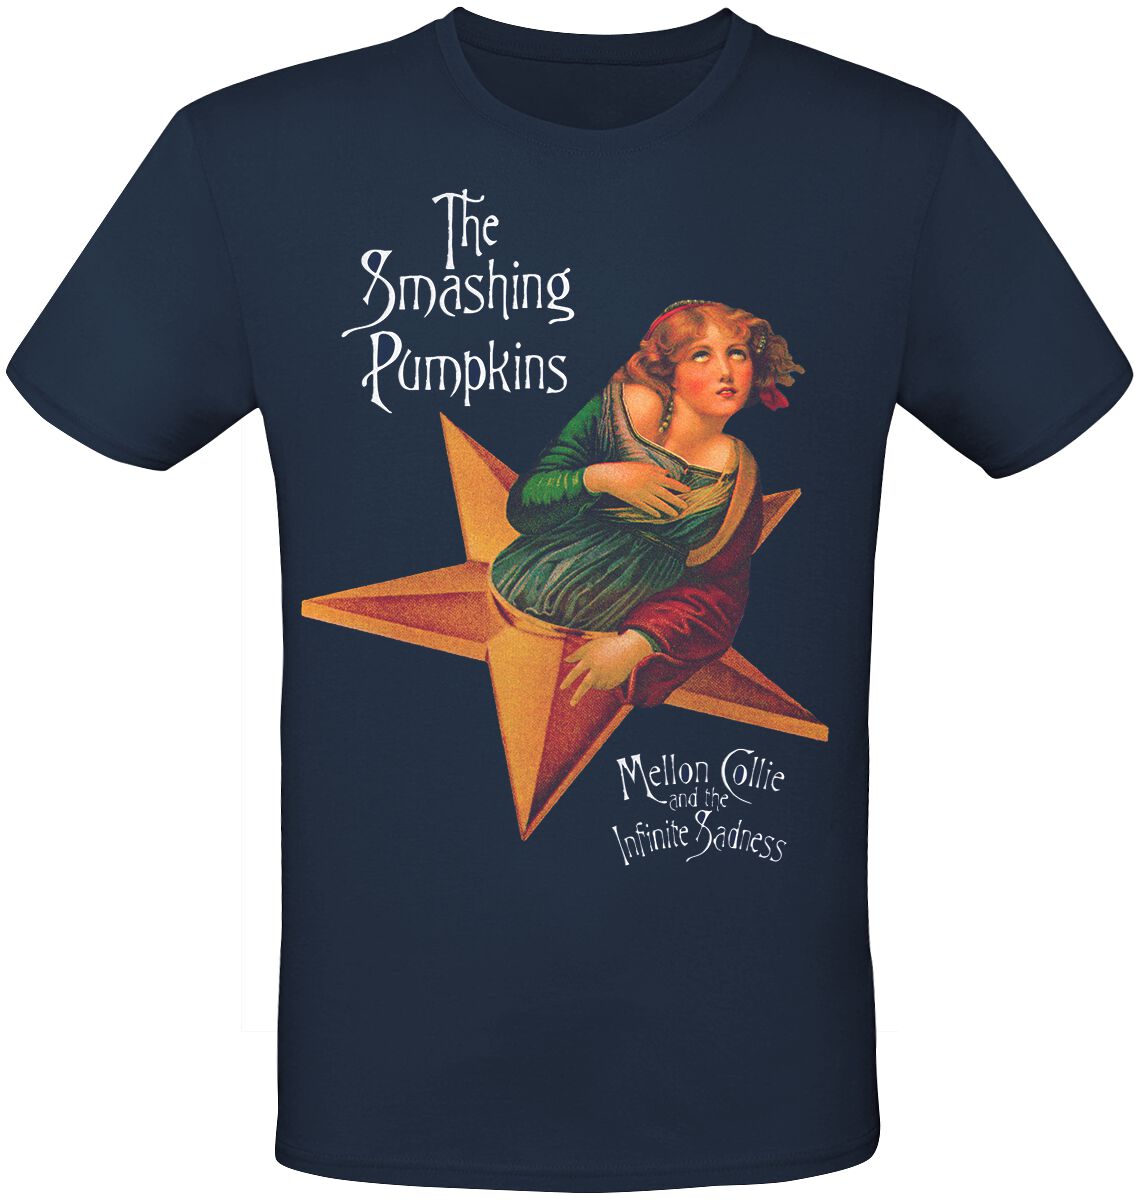 Smashing Pumpkins T-Shirt - MCATIS Album - S bis 3XL - für Männer - Größe L - navy  - Lizenziertes Merchandise!